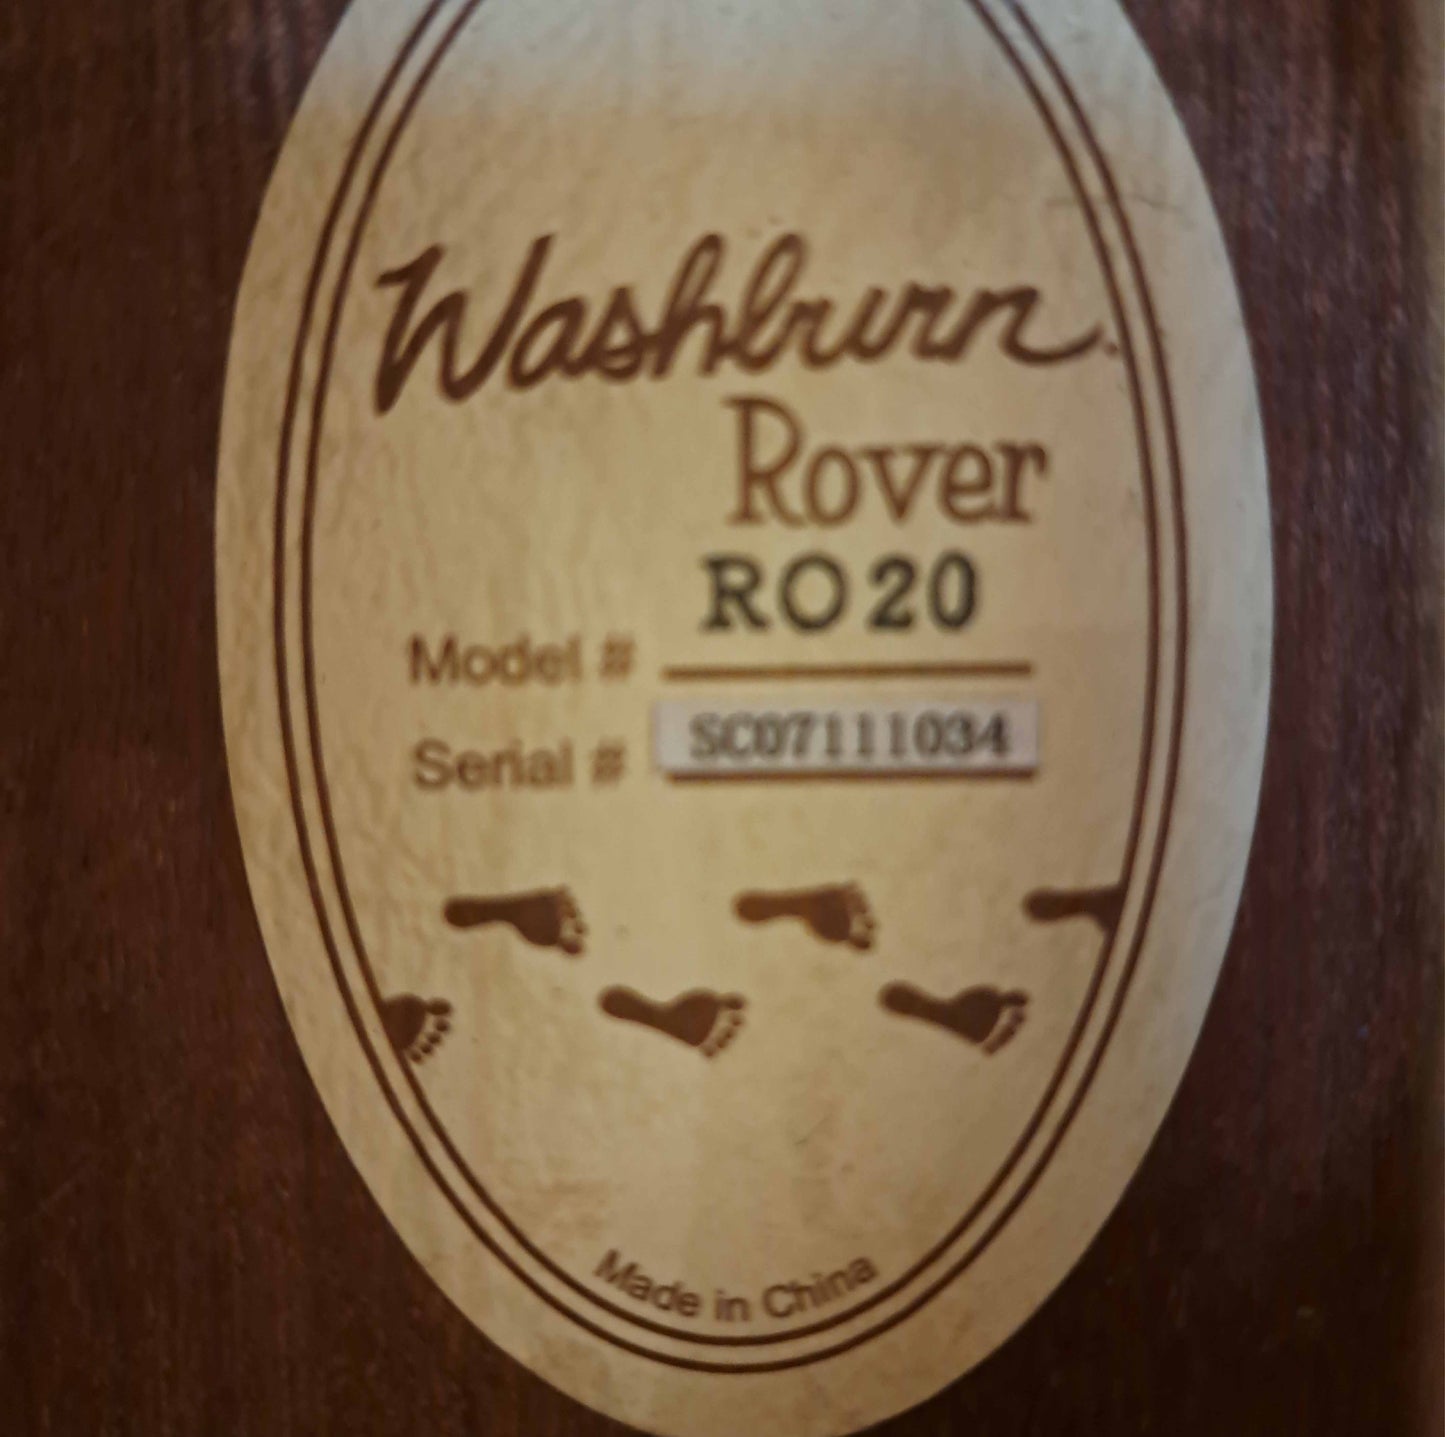 Washburn Rover RO20 traveler classic